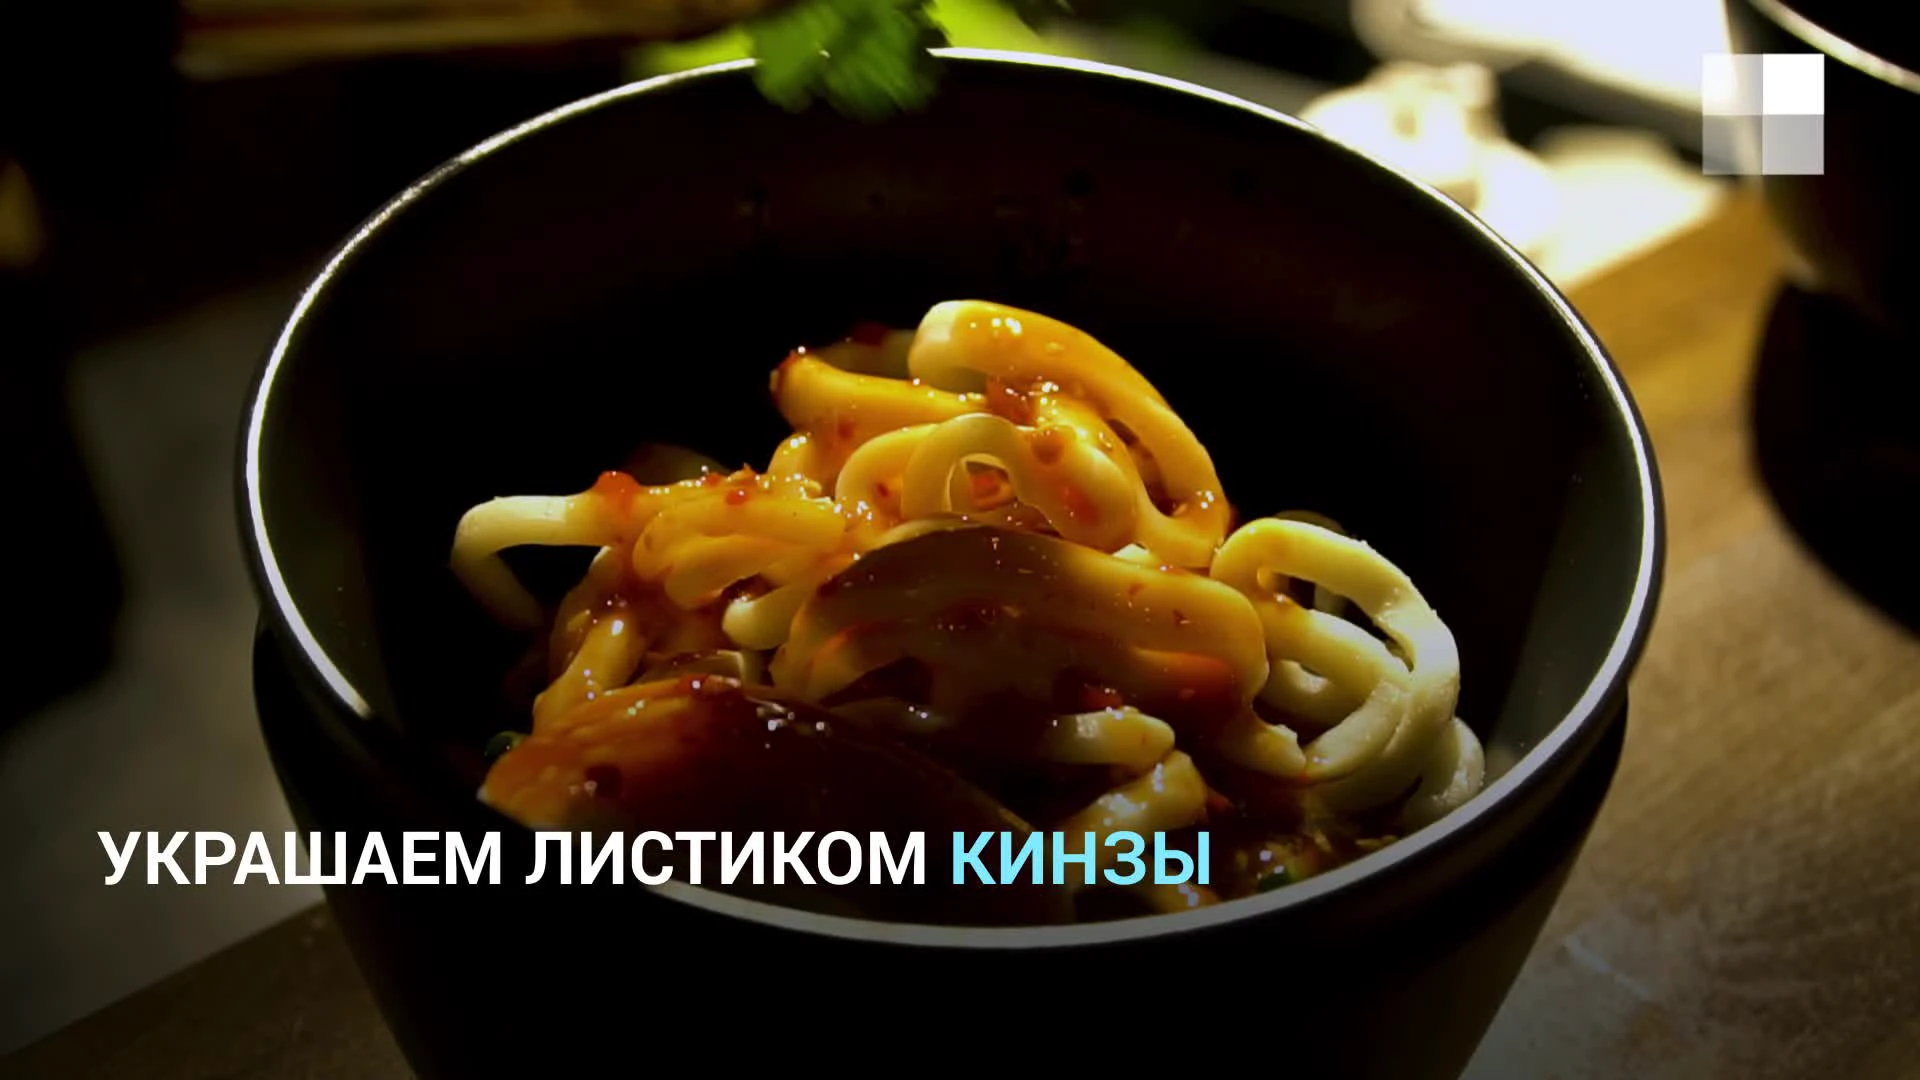 Рецепты от шеф-поваров ресторанов - malino-v.ru